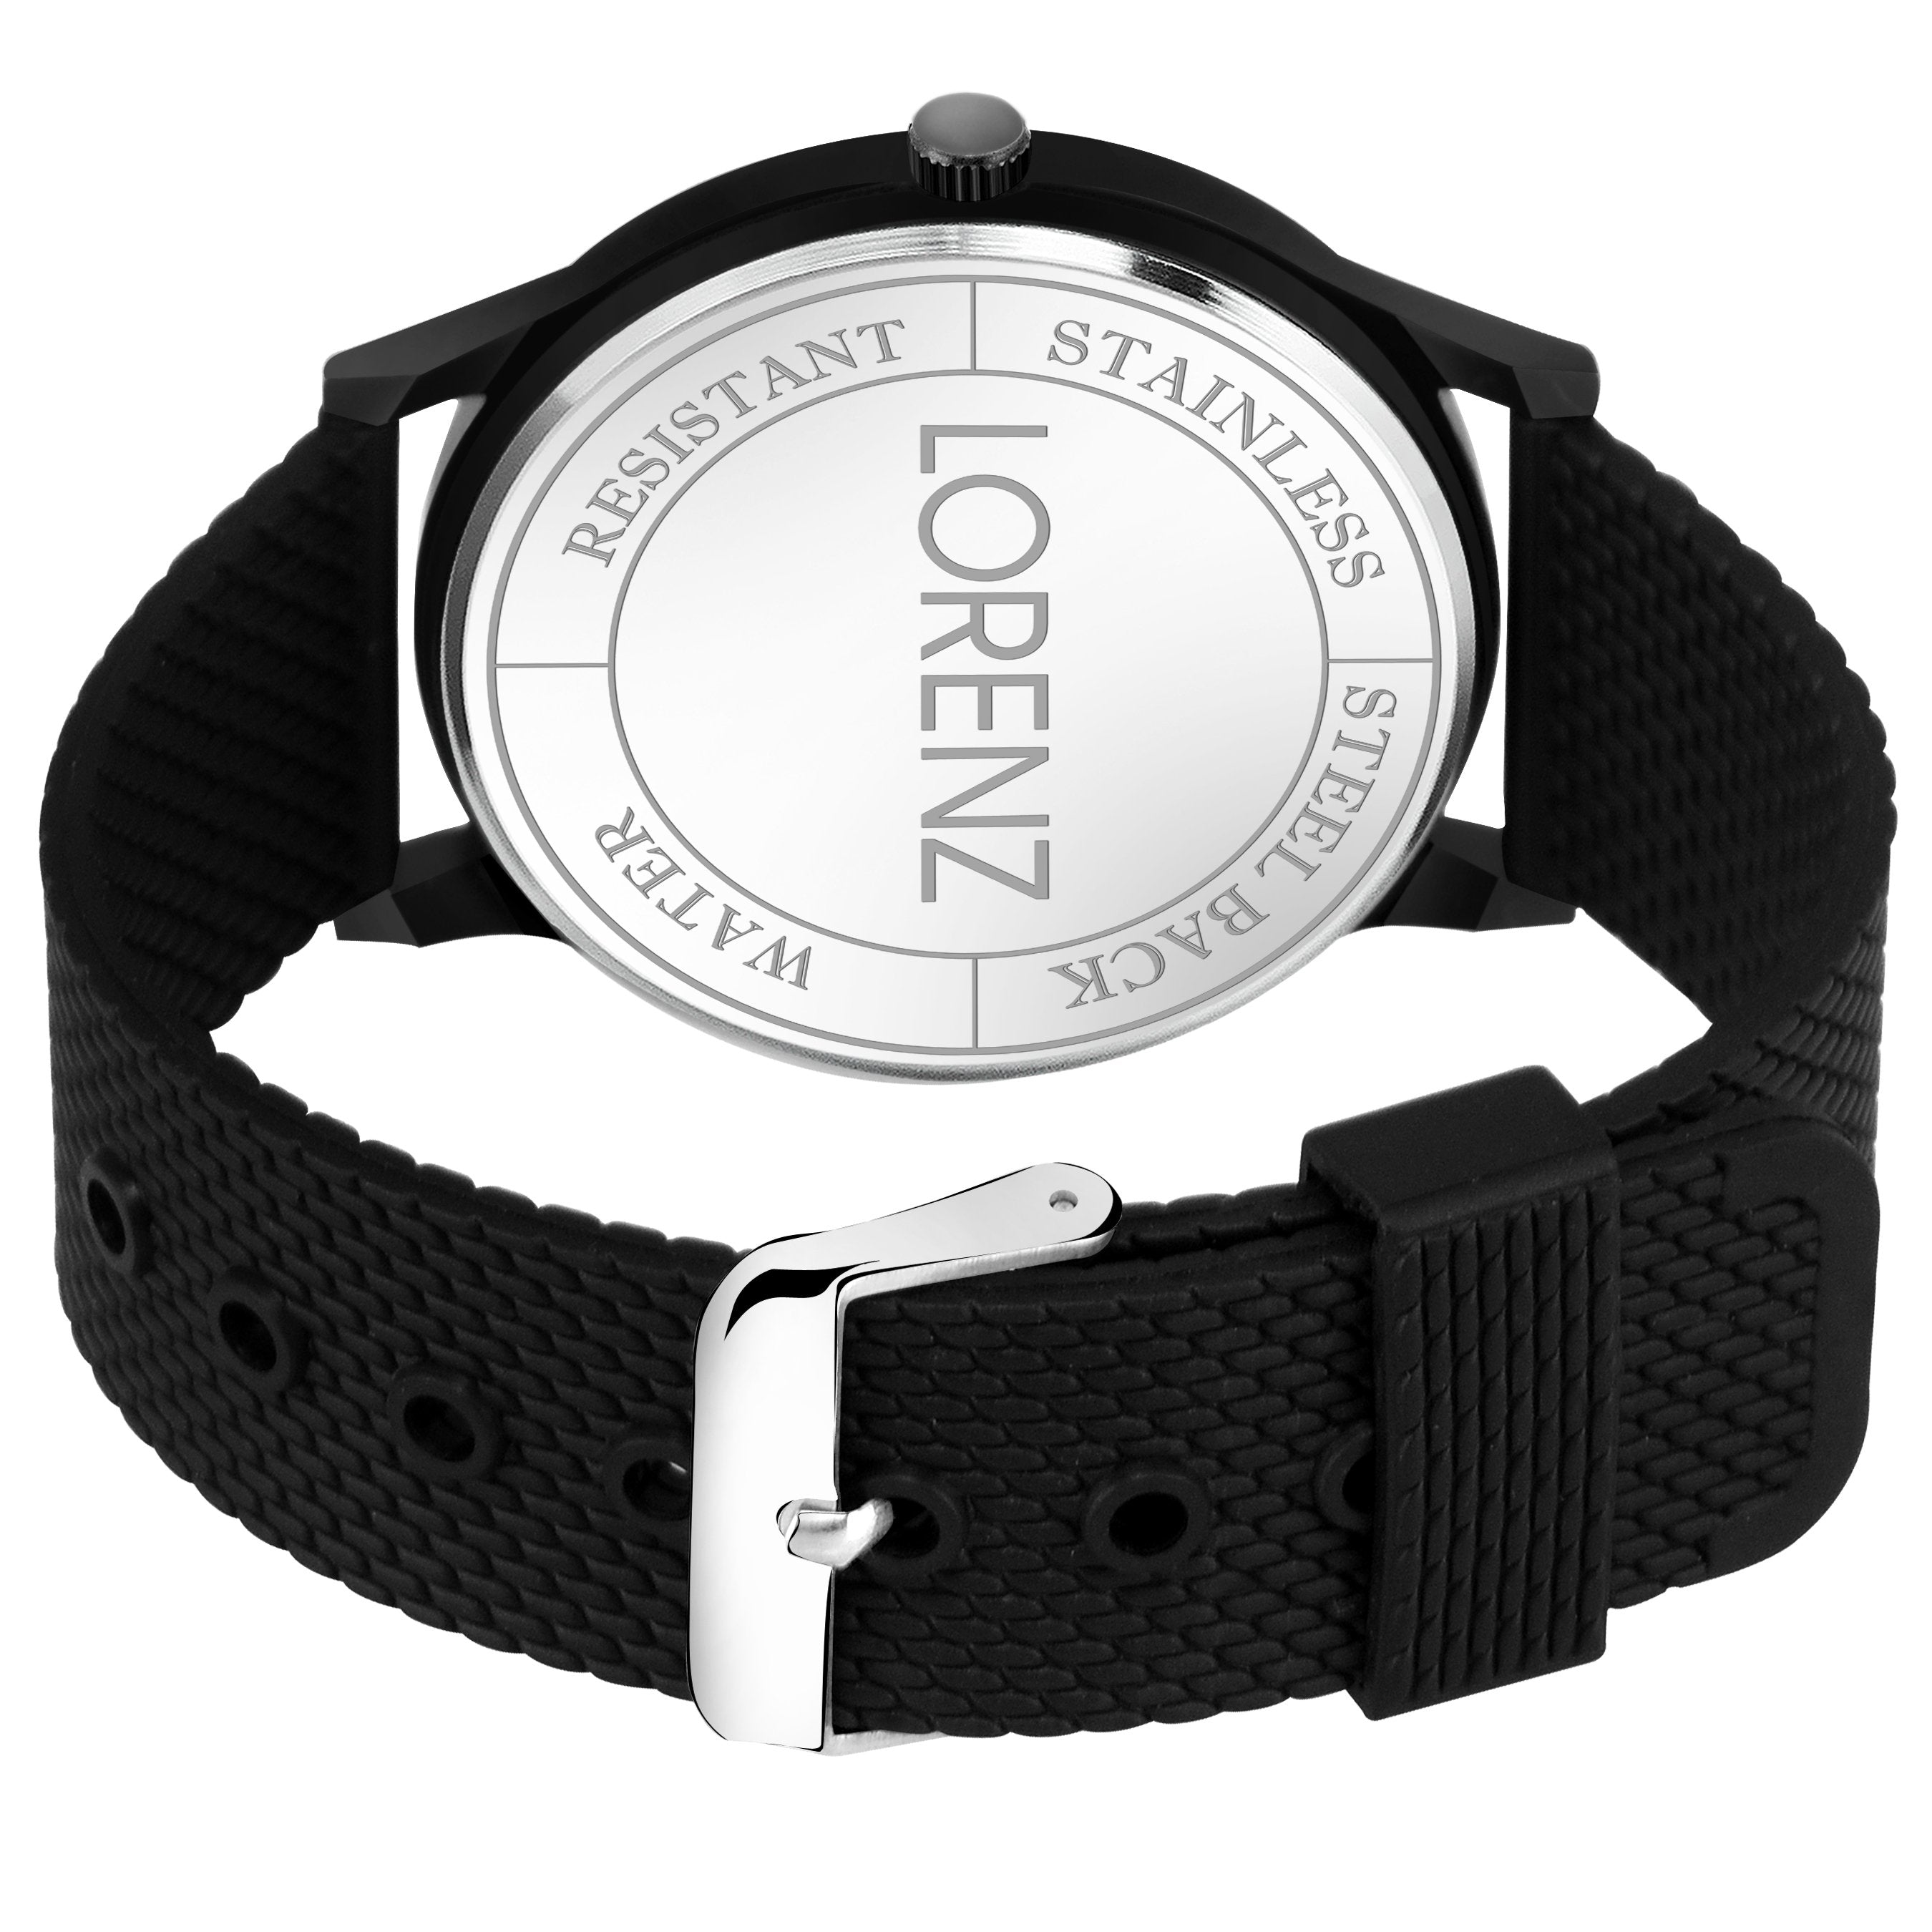 Lorenz Black Date Dial Watch for Men & Boys - MK-2073W - Lorenz Fashion